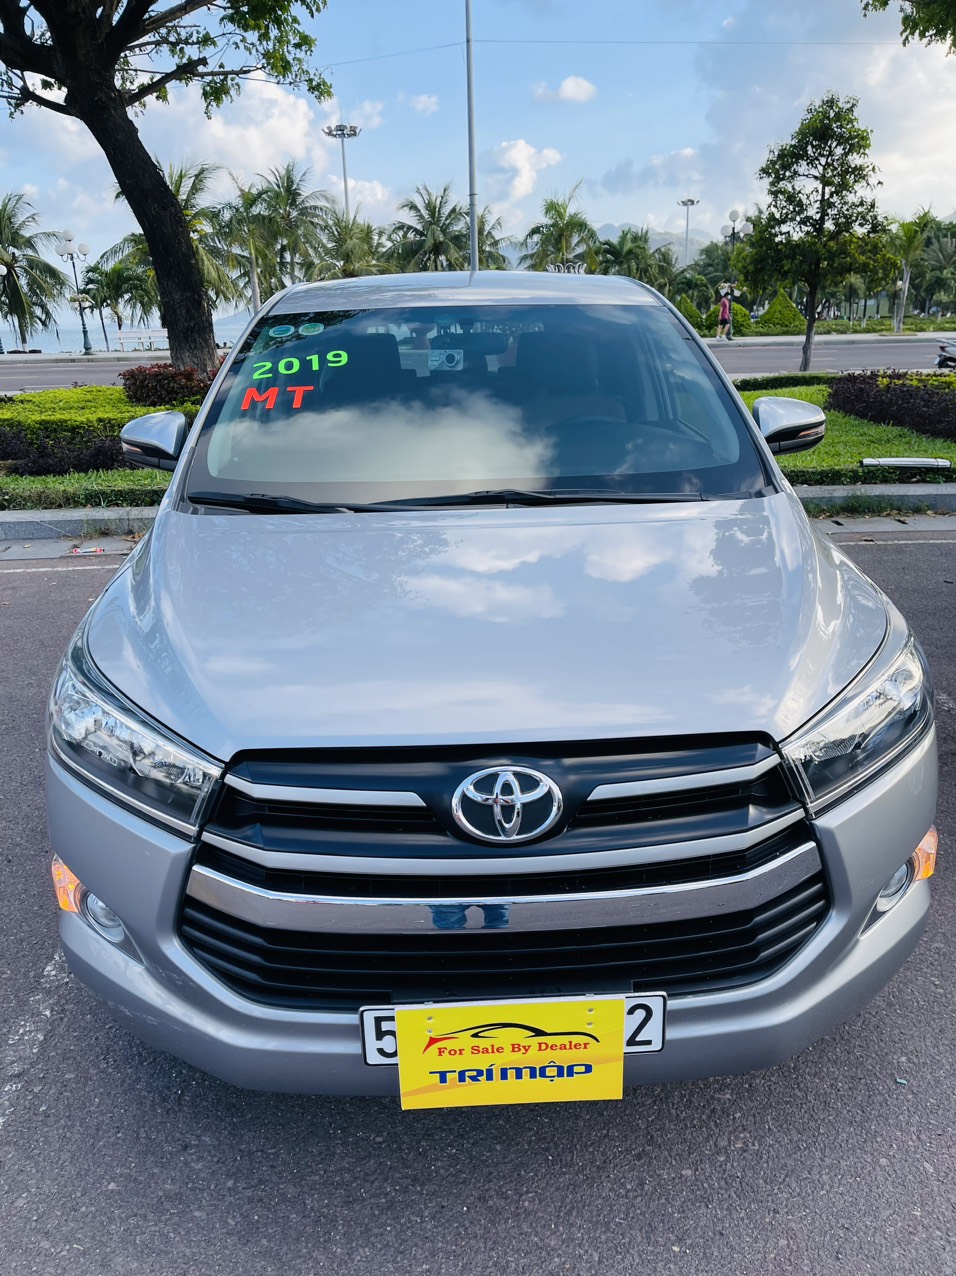 UUsed Car Dealer Trimap đang bán; Toyota Innova E 2.0 sx 2019, đăng ký 2020 một chủ mua mới đầu. -0